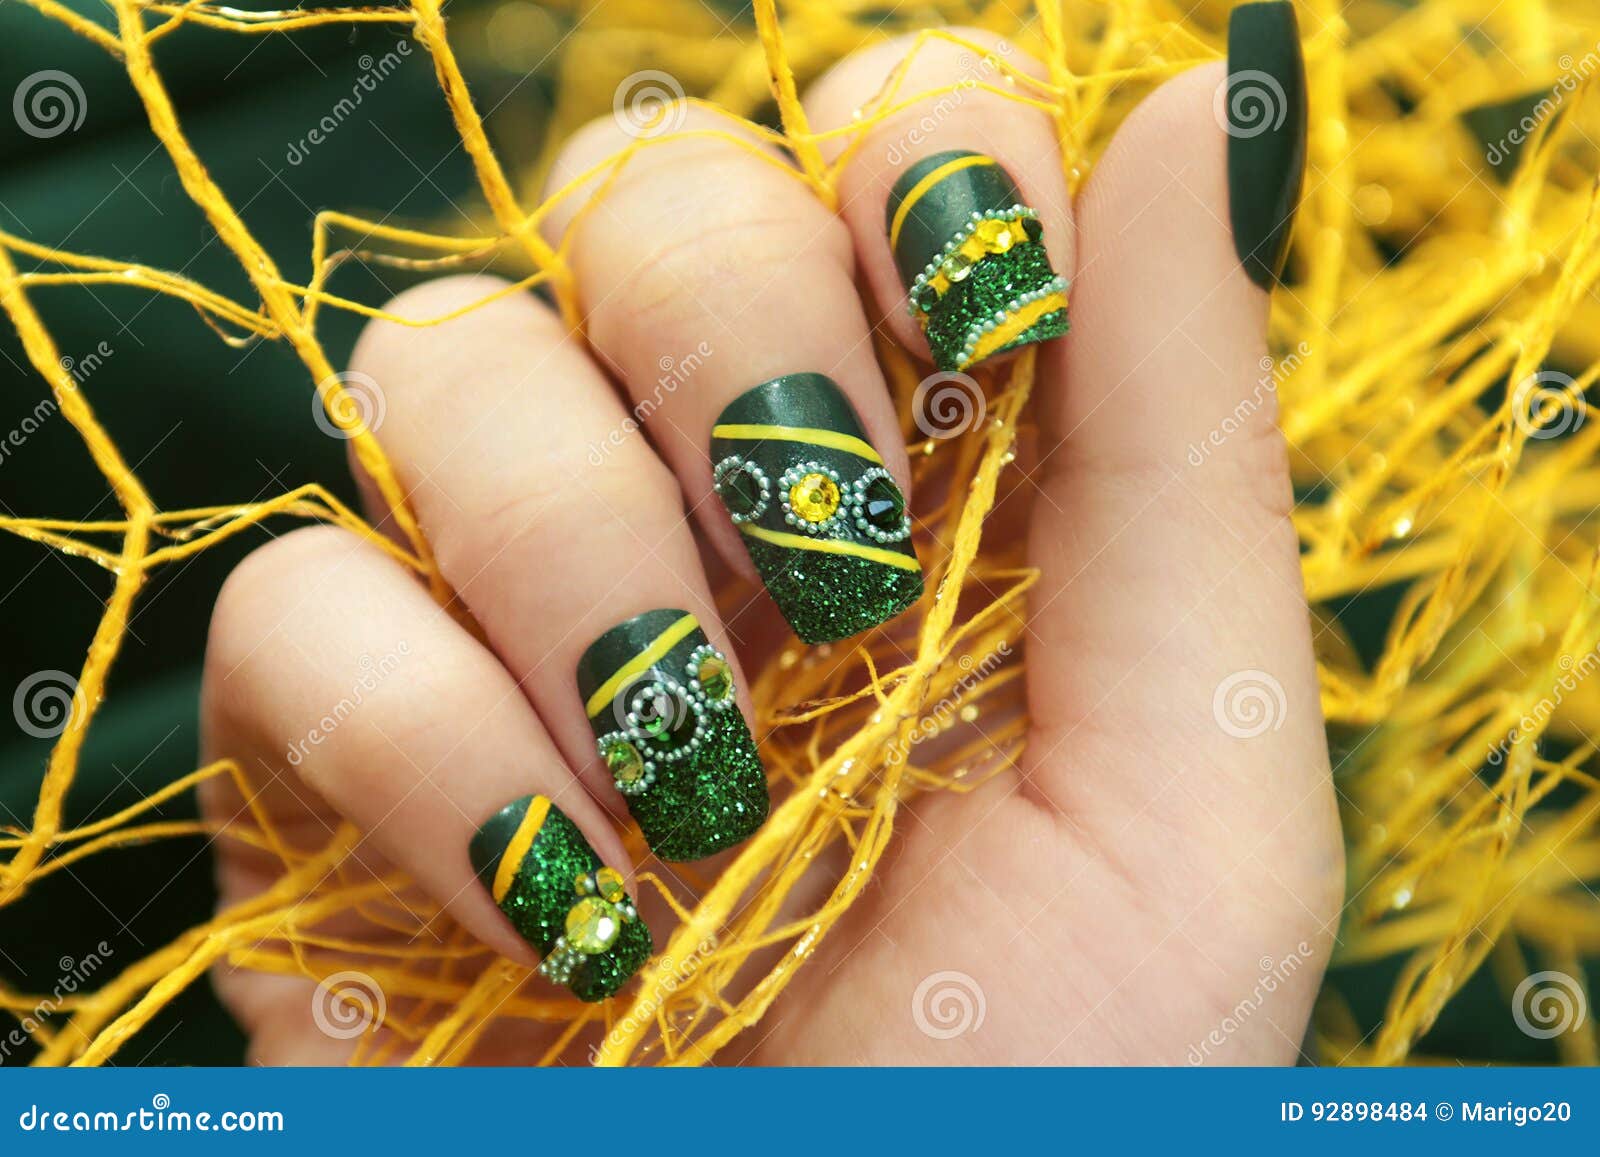 ✖️_Nᴬᴵᴸᶠᴵᴱˢ_✖️ | Acrylic nails yellow, Yellow nails, Yellow nails design